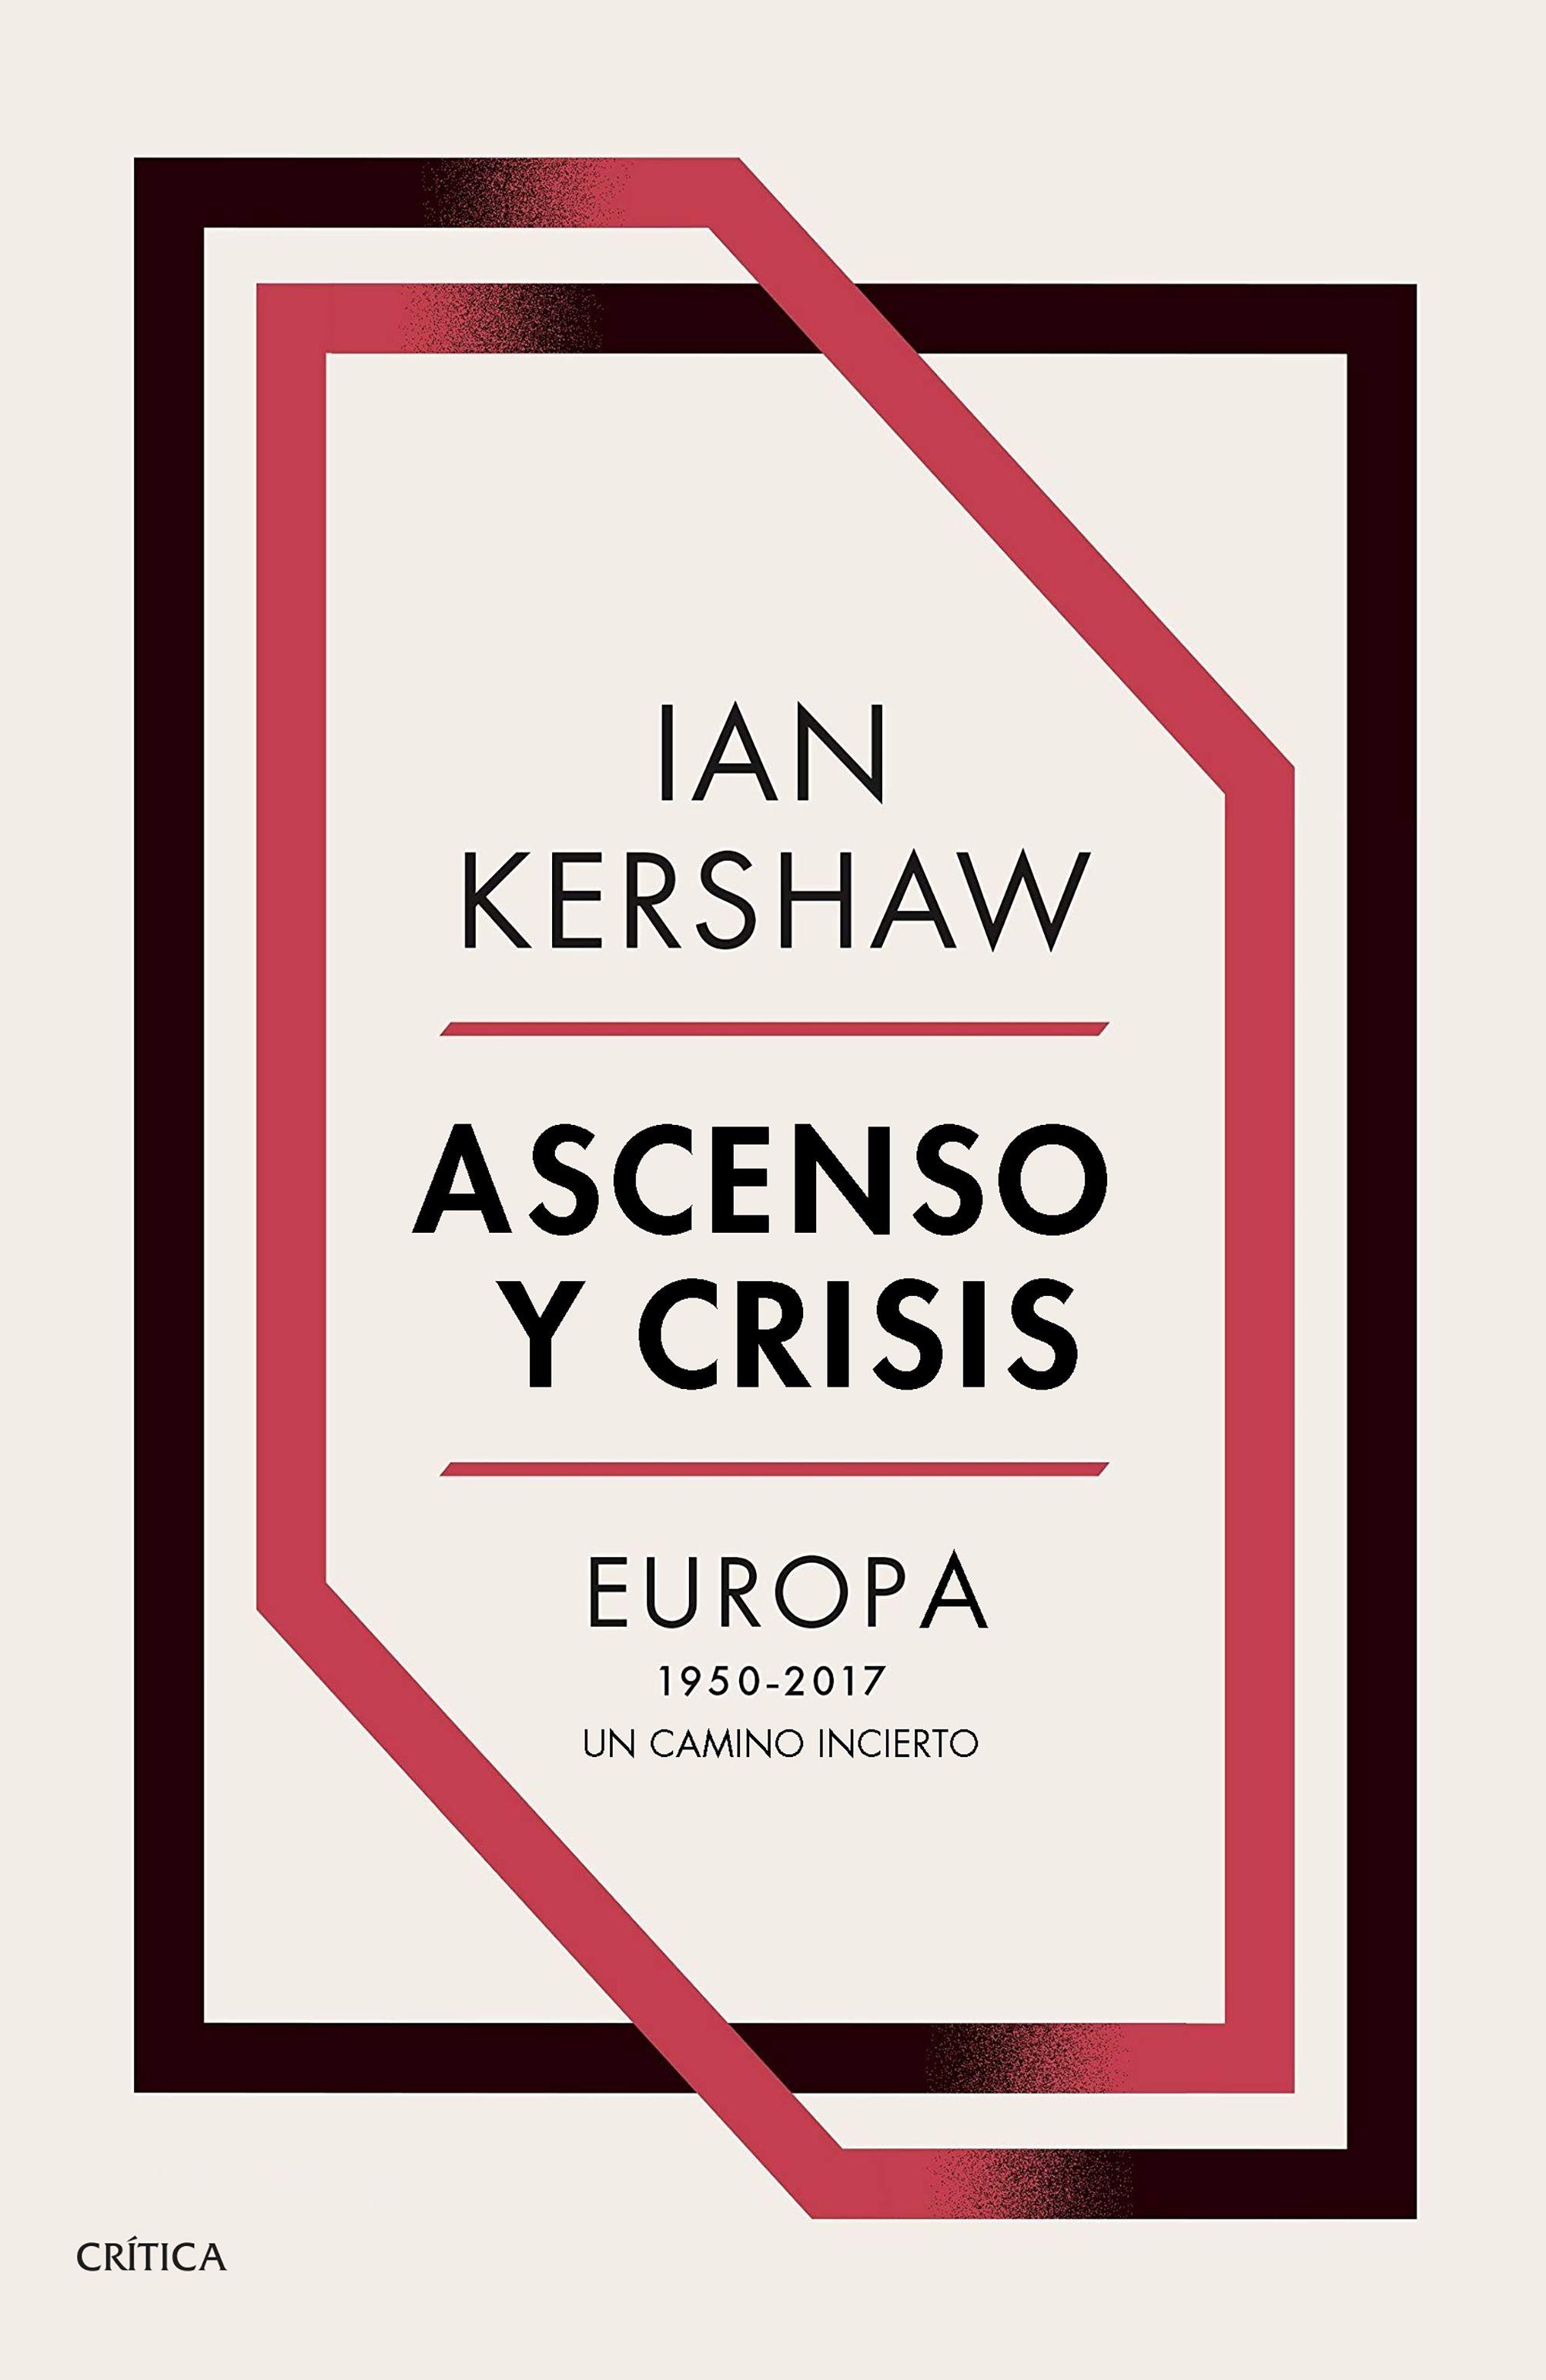 ASCENSO Y CRISIS "Europa 1950-2017: un camino incierto"